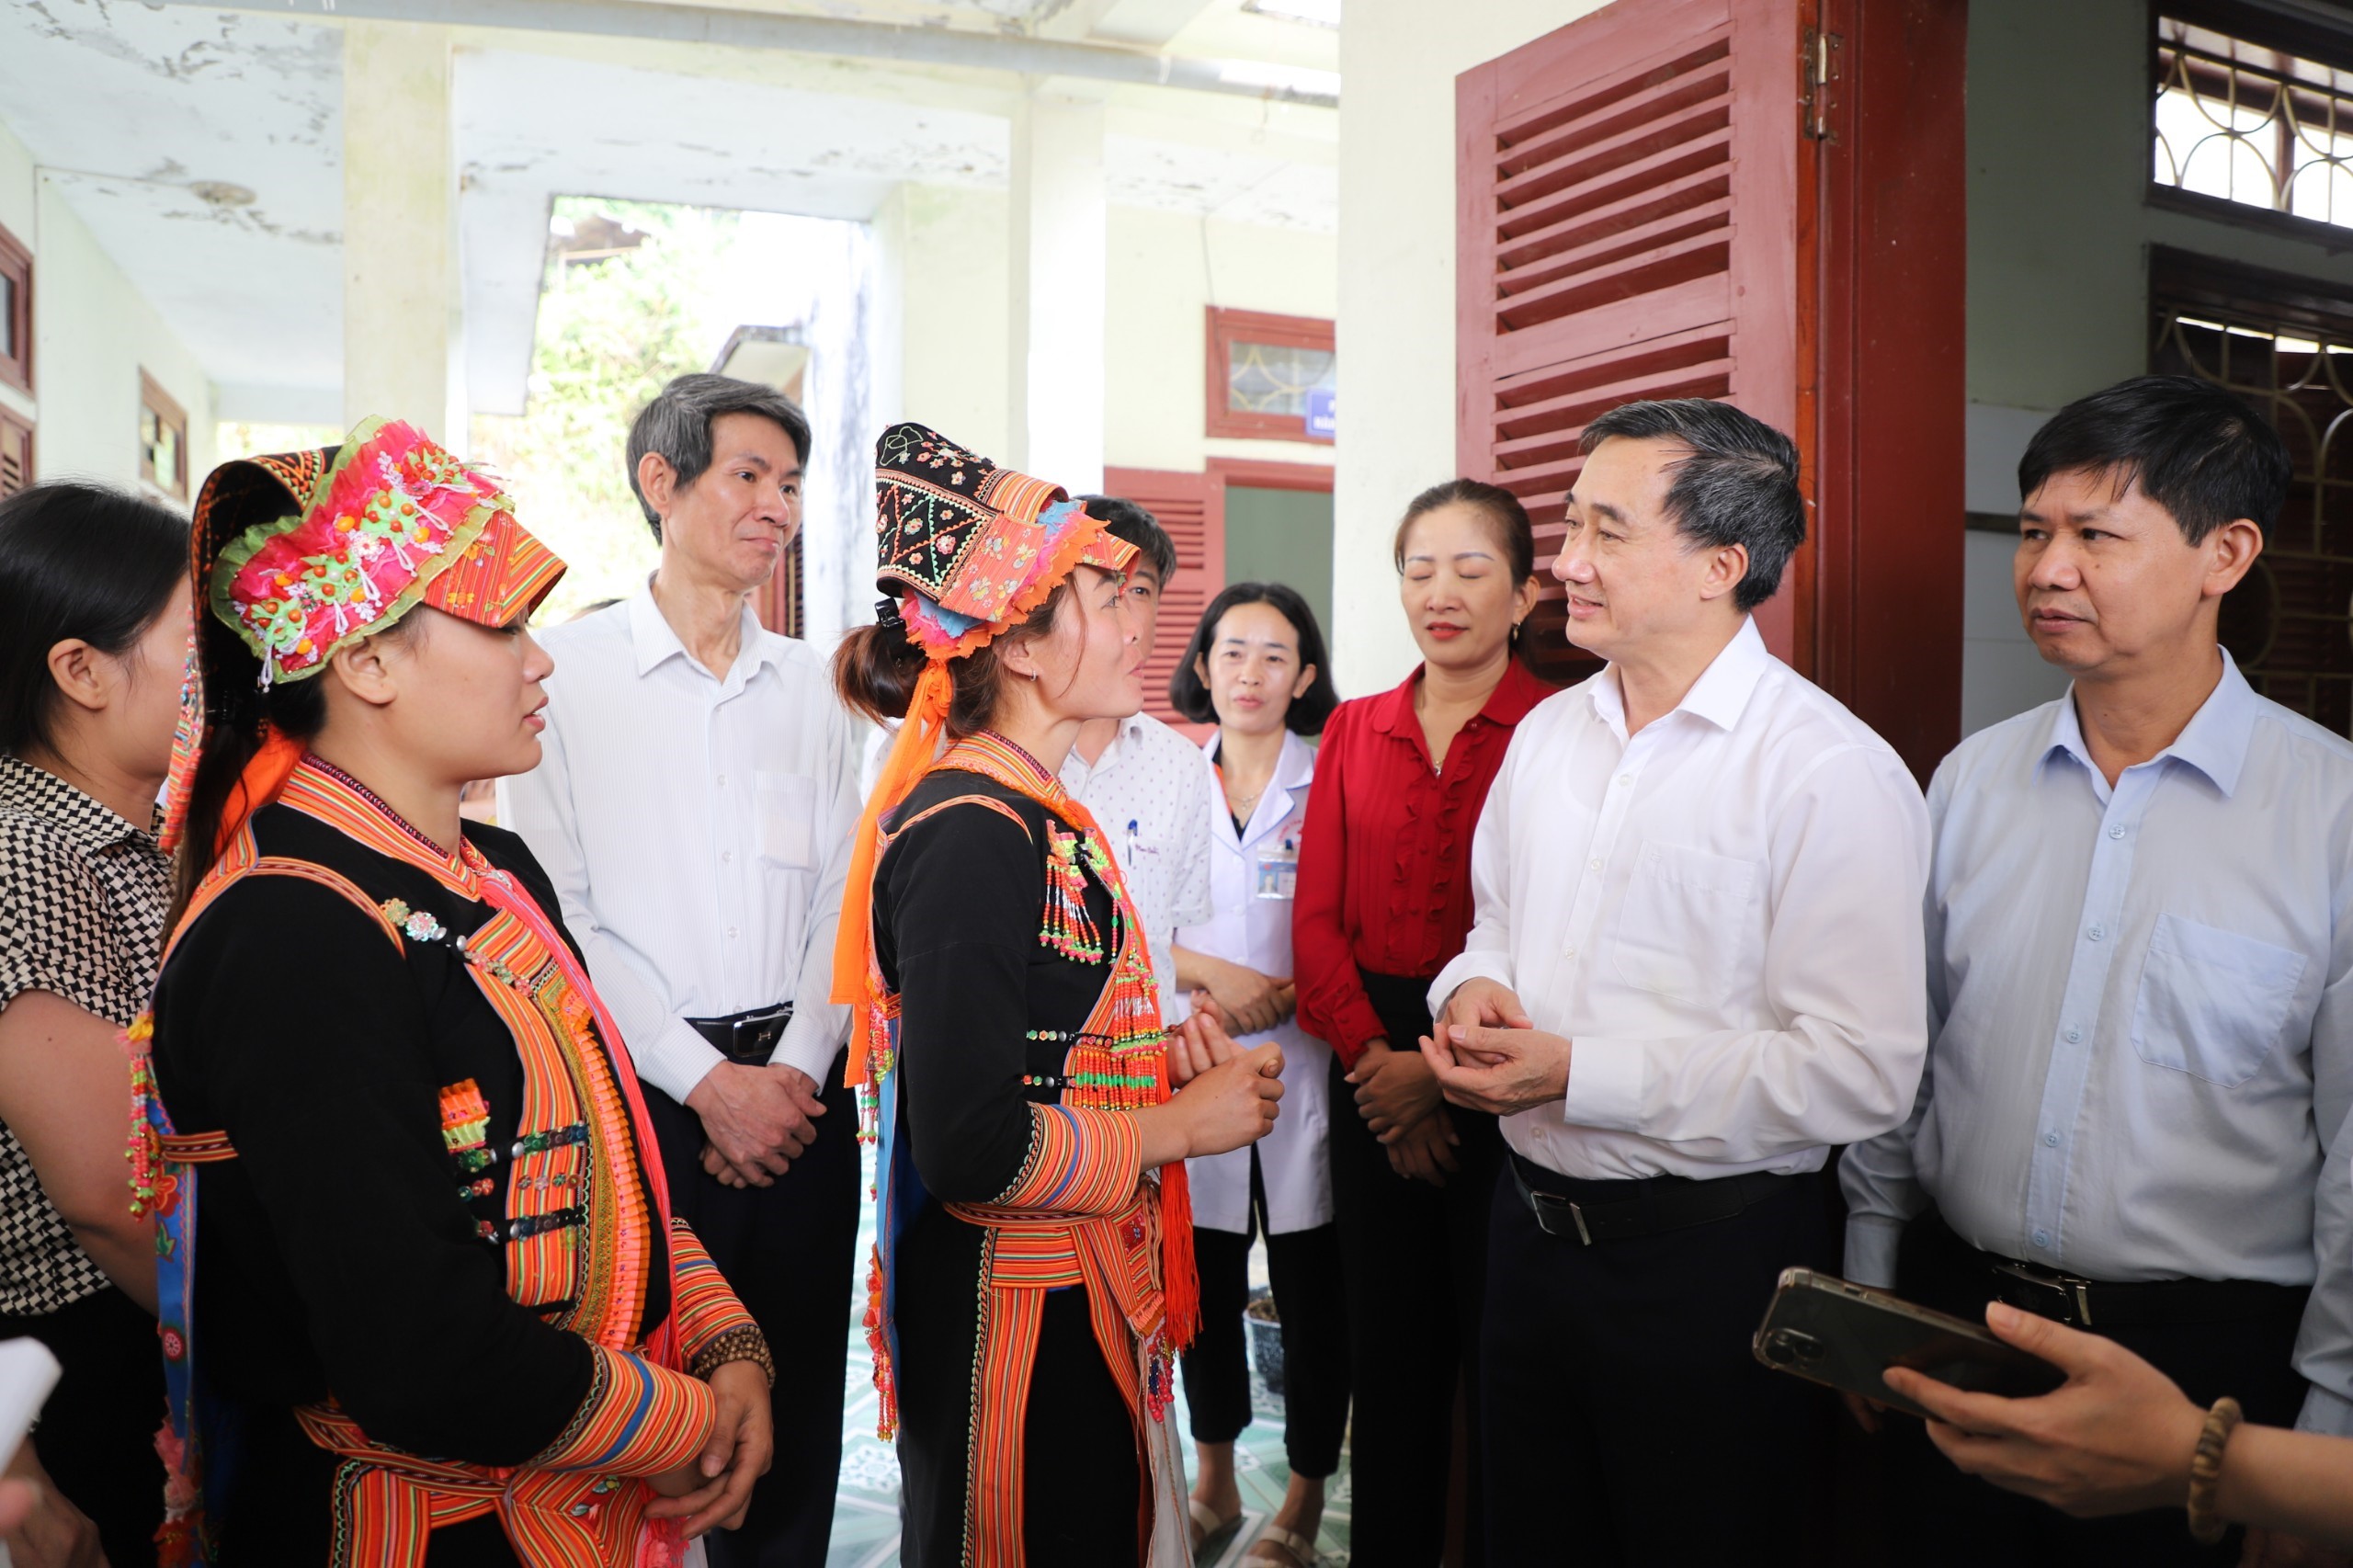 Bộ Y tế giám sát việc thực hiện các chương trình can thiệp về sức khỏe bà mẹ và kế hoạch hóa gia đình tại tỉnh Lai Châu